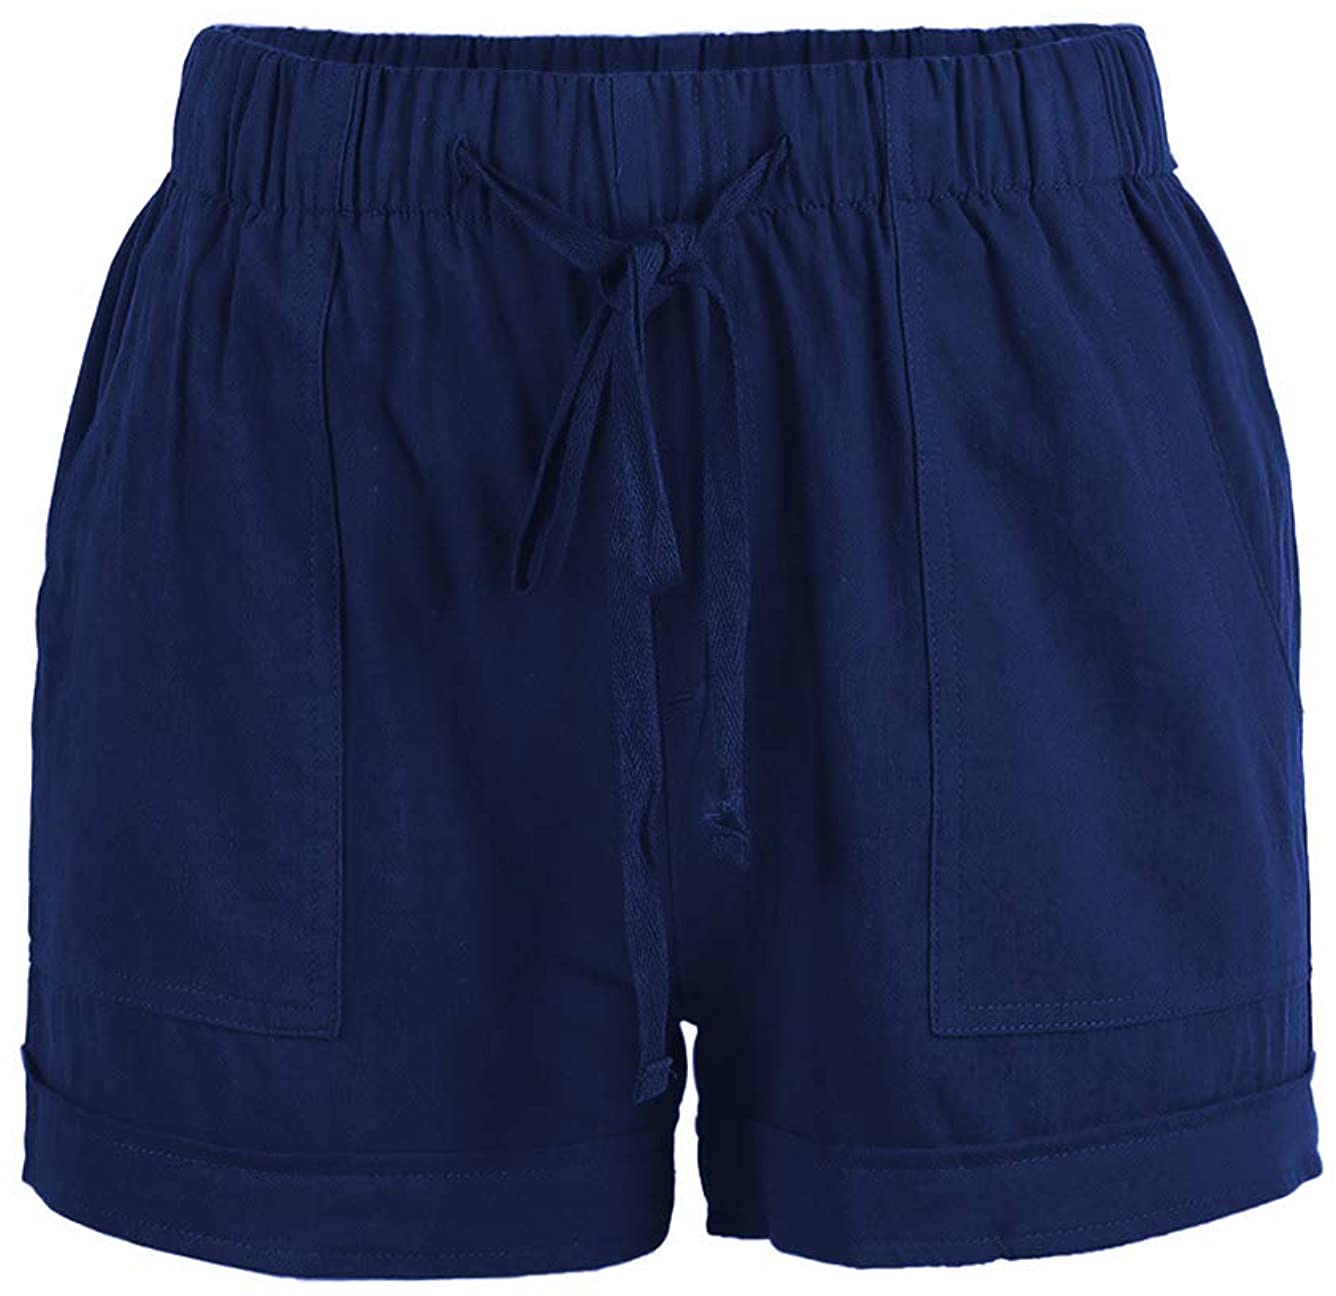 Bunanphy Summer Drawstring Elastic Waist Casual Shorts with Pockets Lounge Pants Shorts 